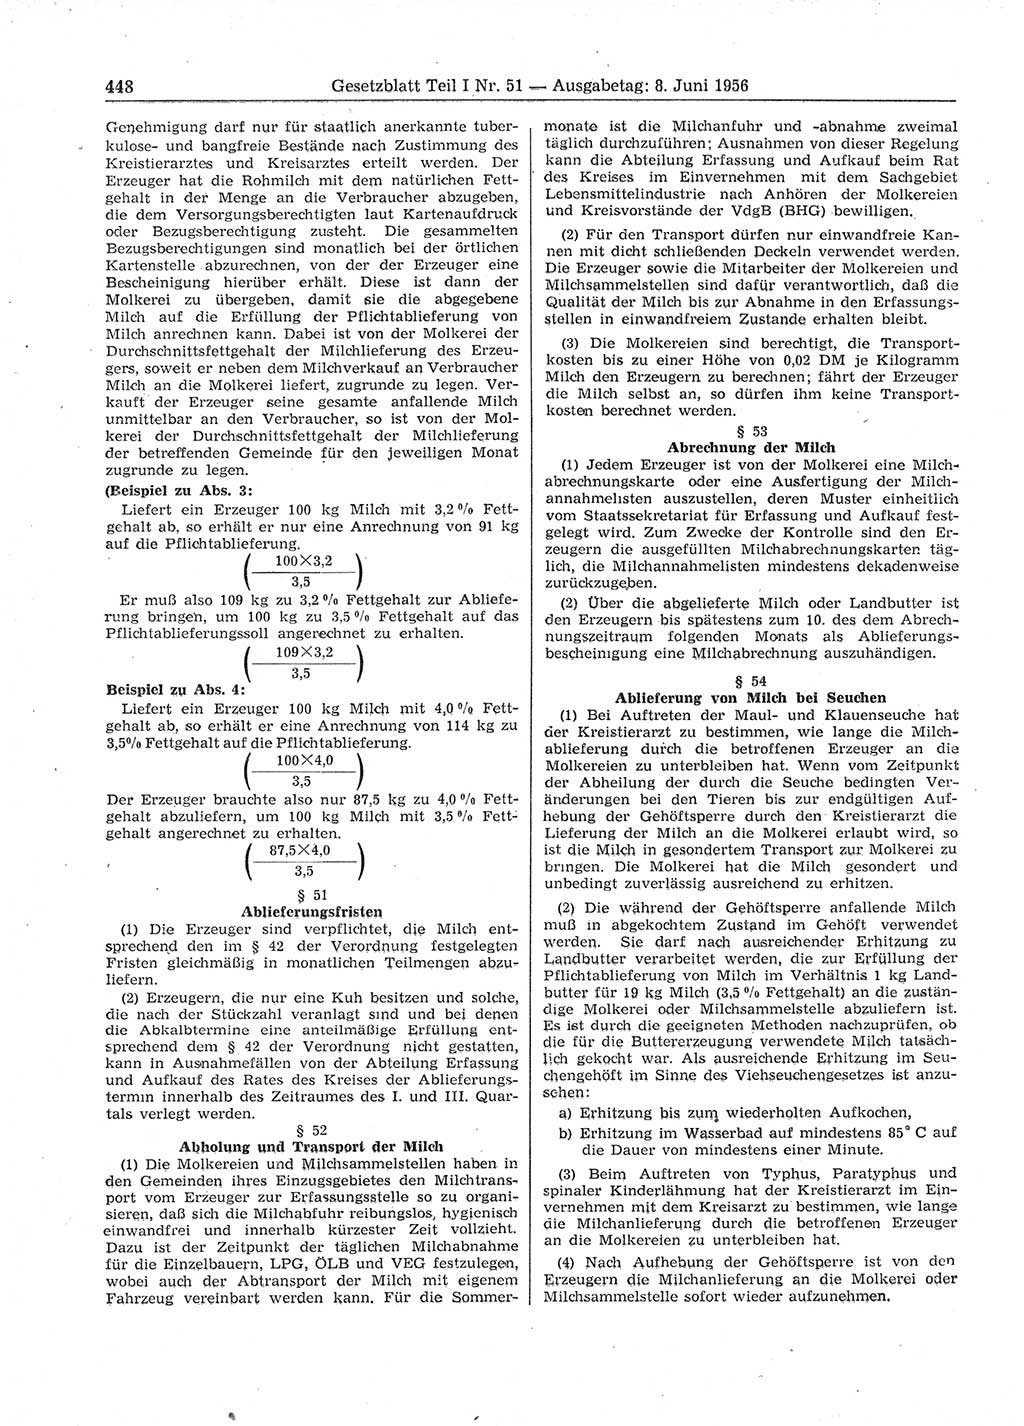 Gesetzblatt (GBl.) der Deutschen Demokratischen Republik (DDR) Teil Ⅰ 1956, Seite 448 (GBl. DDR Ⅰ 1956, S. 448)